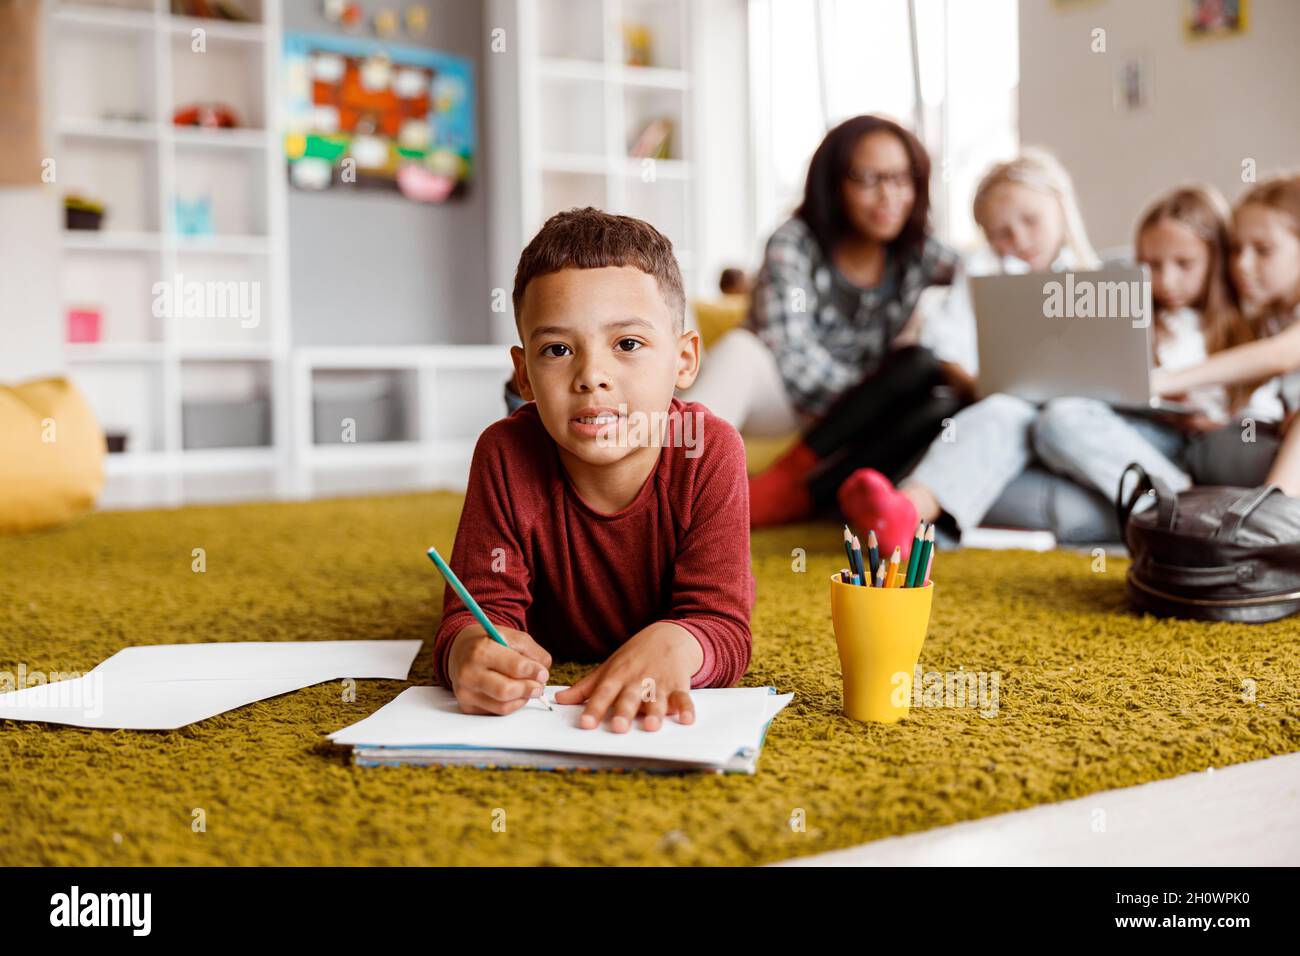 Sorridendo ragazzino che tiene una matita e che disegnava su carta sul pavimento Foto Stock